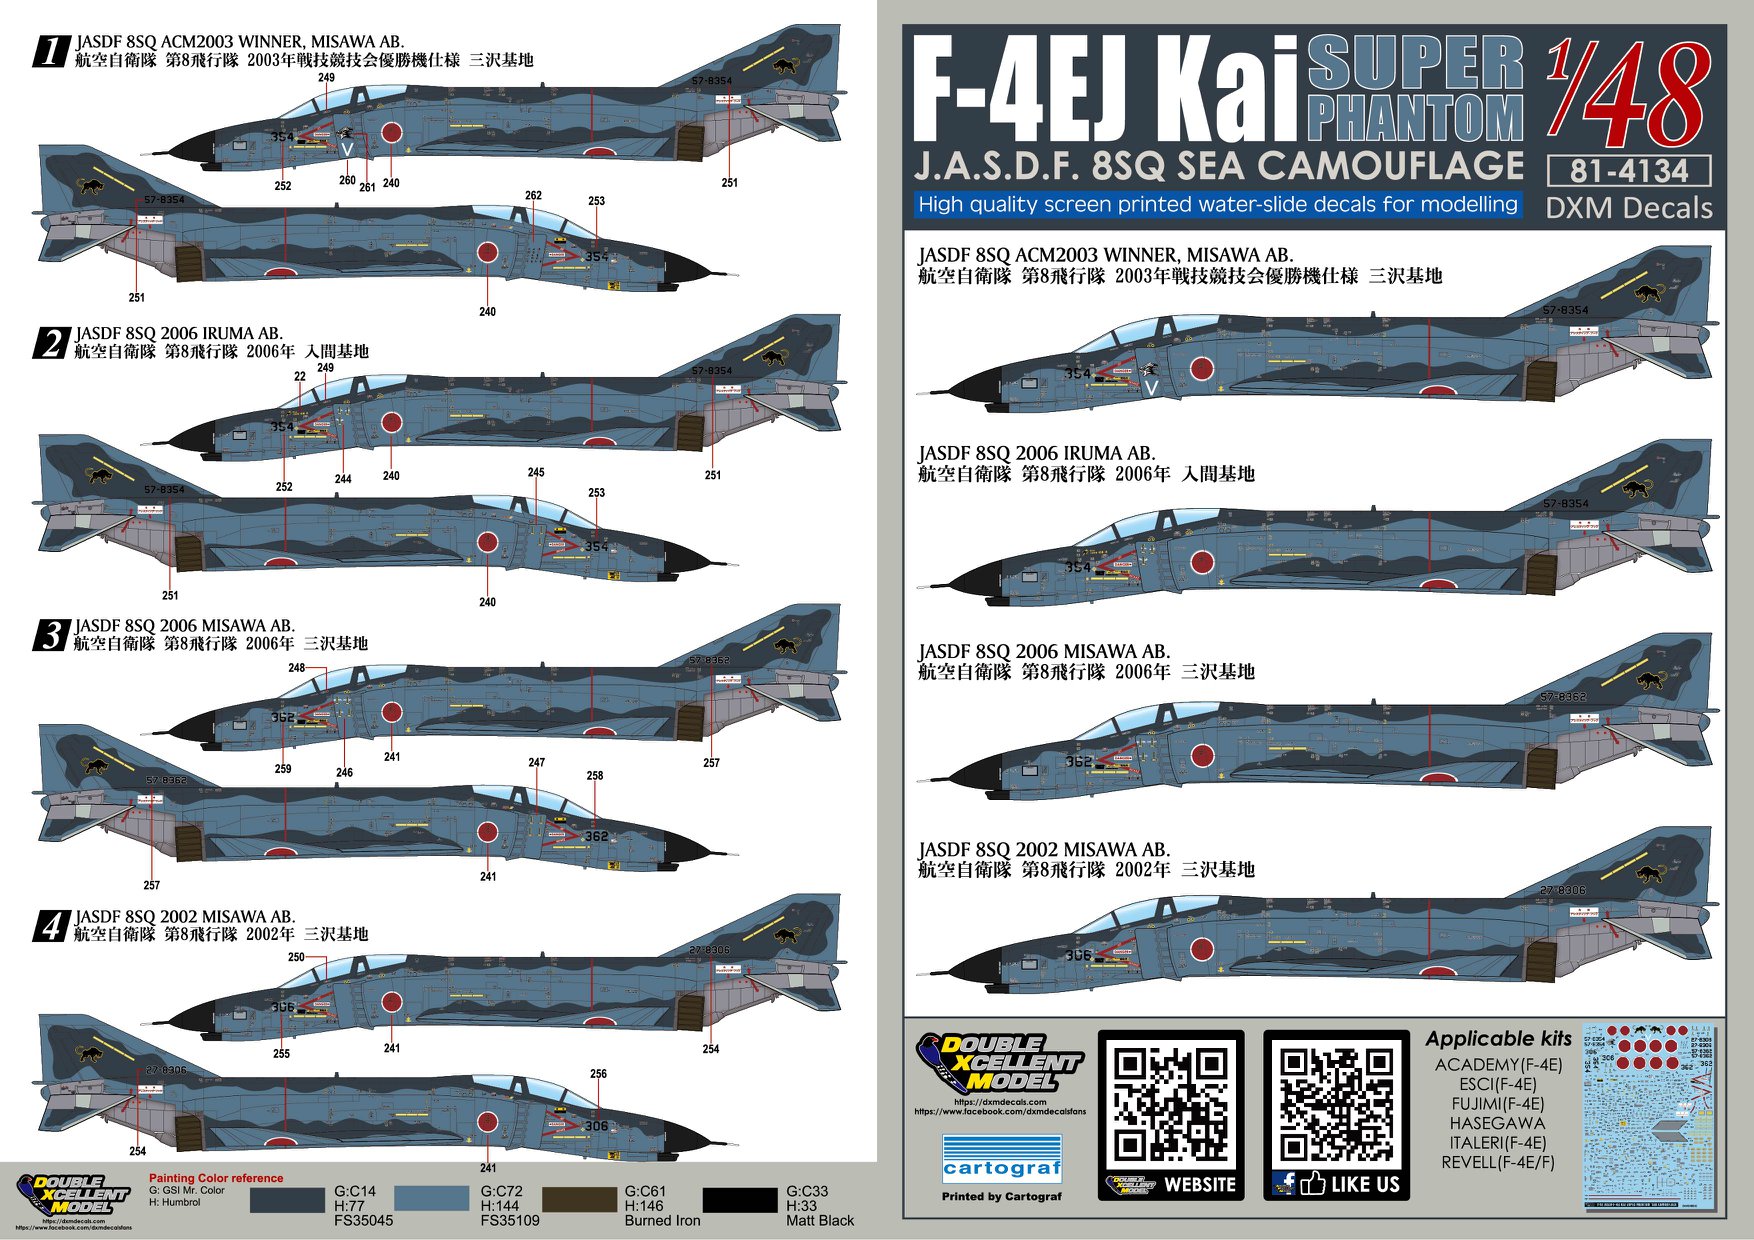 DXM 航空自衛隊 F-4EJ改 ファントムII 洋上迷彩デカール入荷しました。